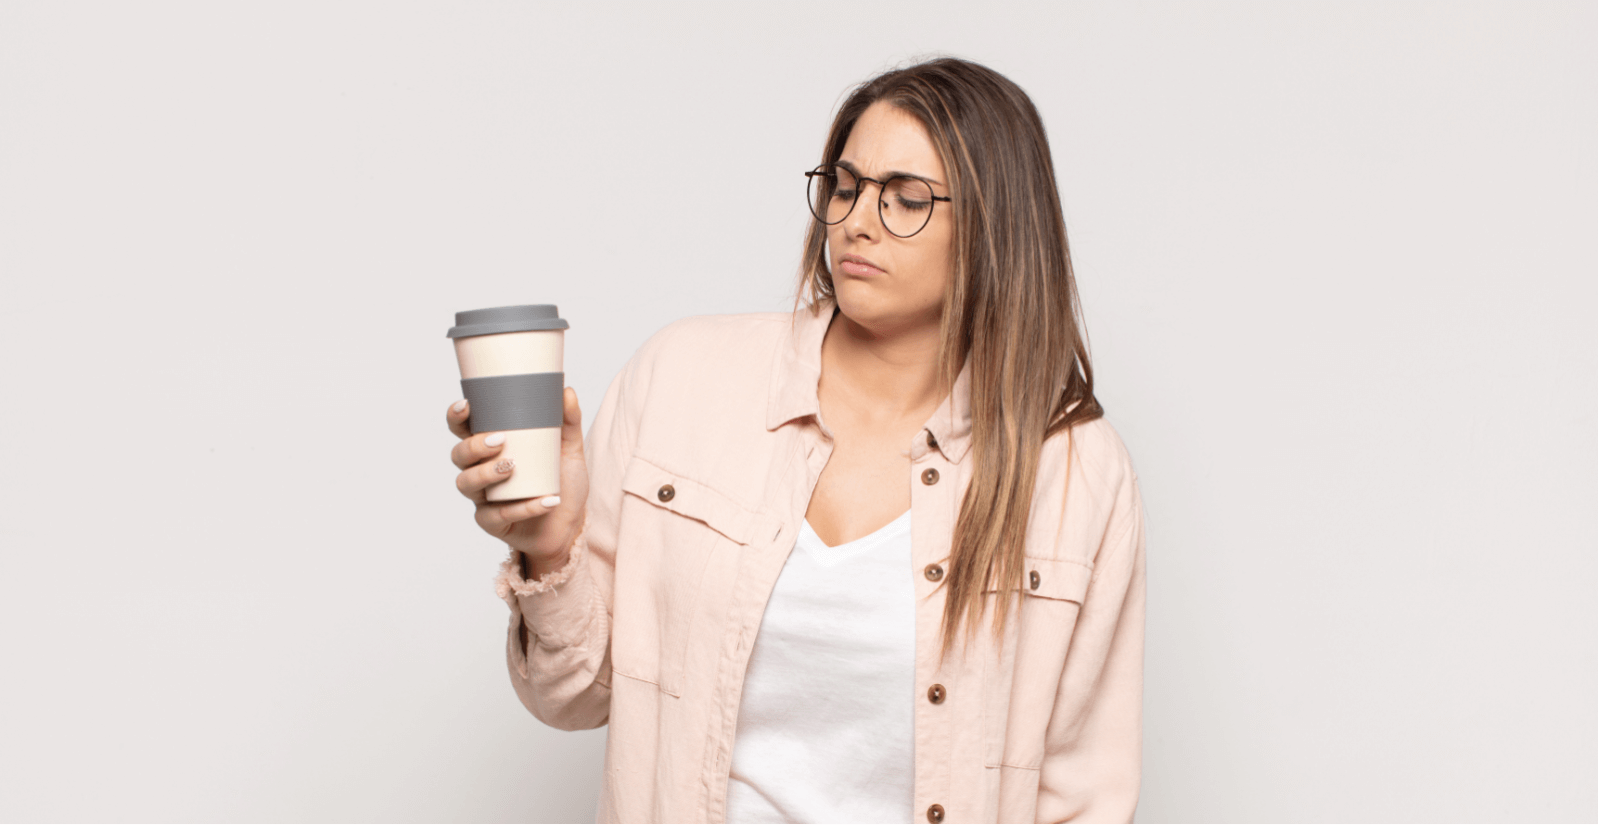 咖啡导致焦虑吗?